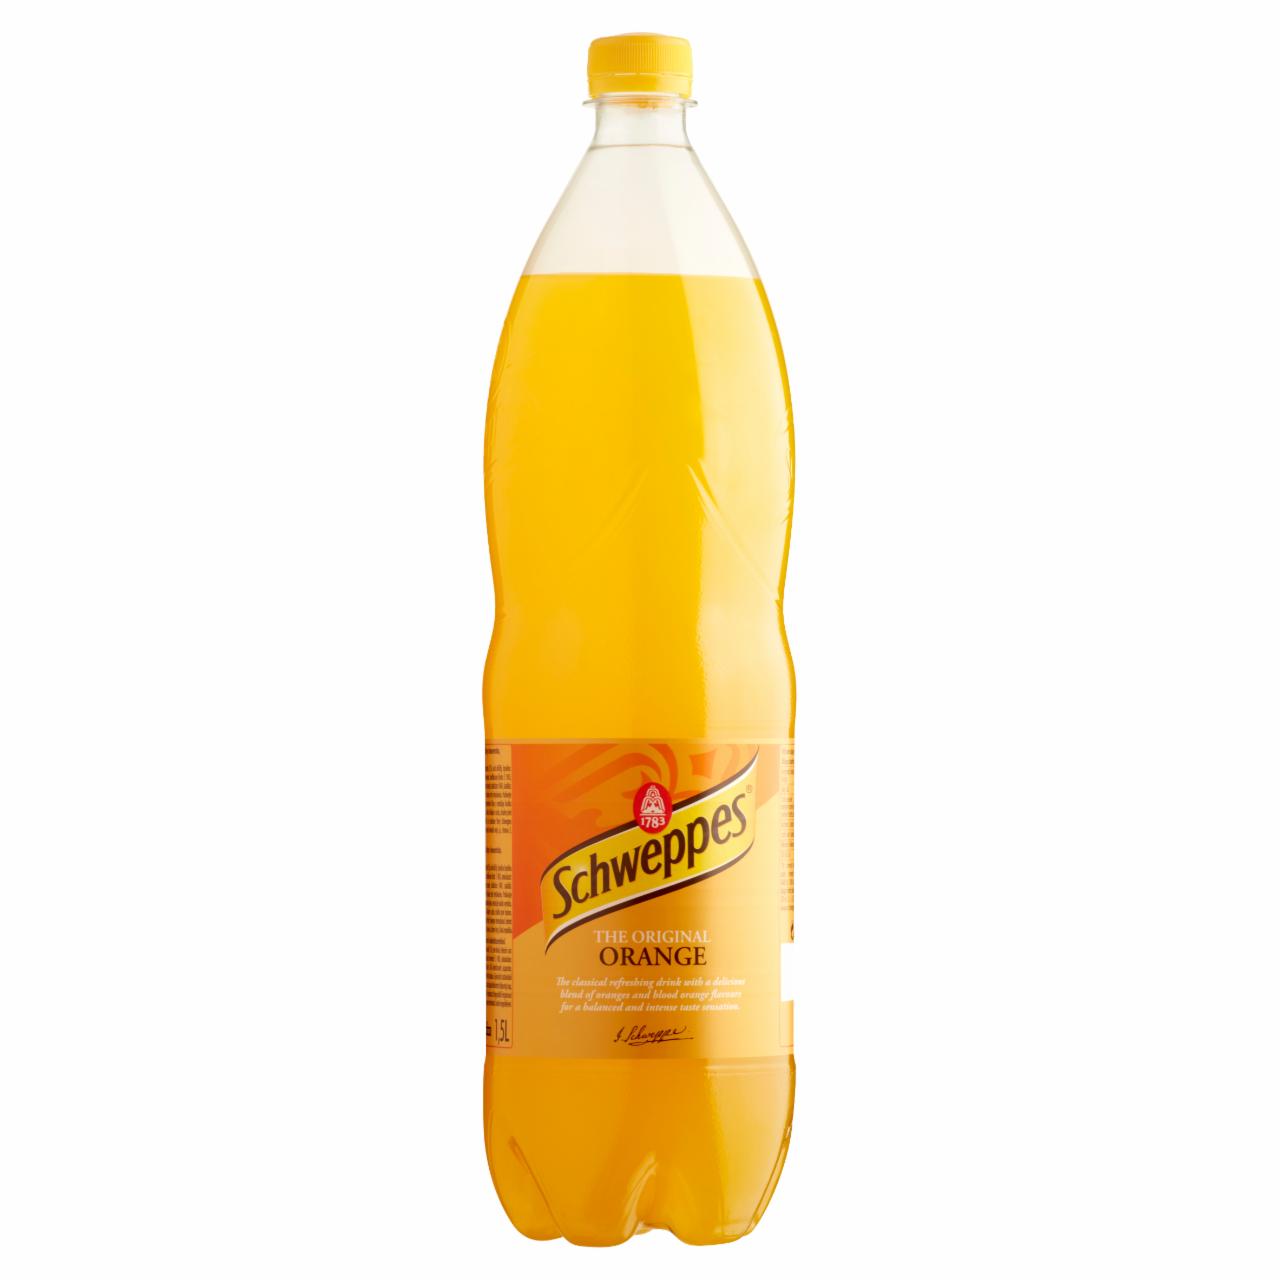 Képek - Schweppes narancsízű szénsavas üdítőital cukorral és édesítőszerekkel 1,5 l